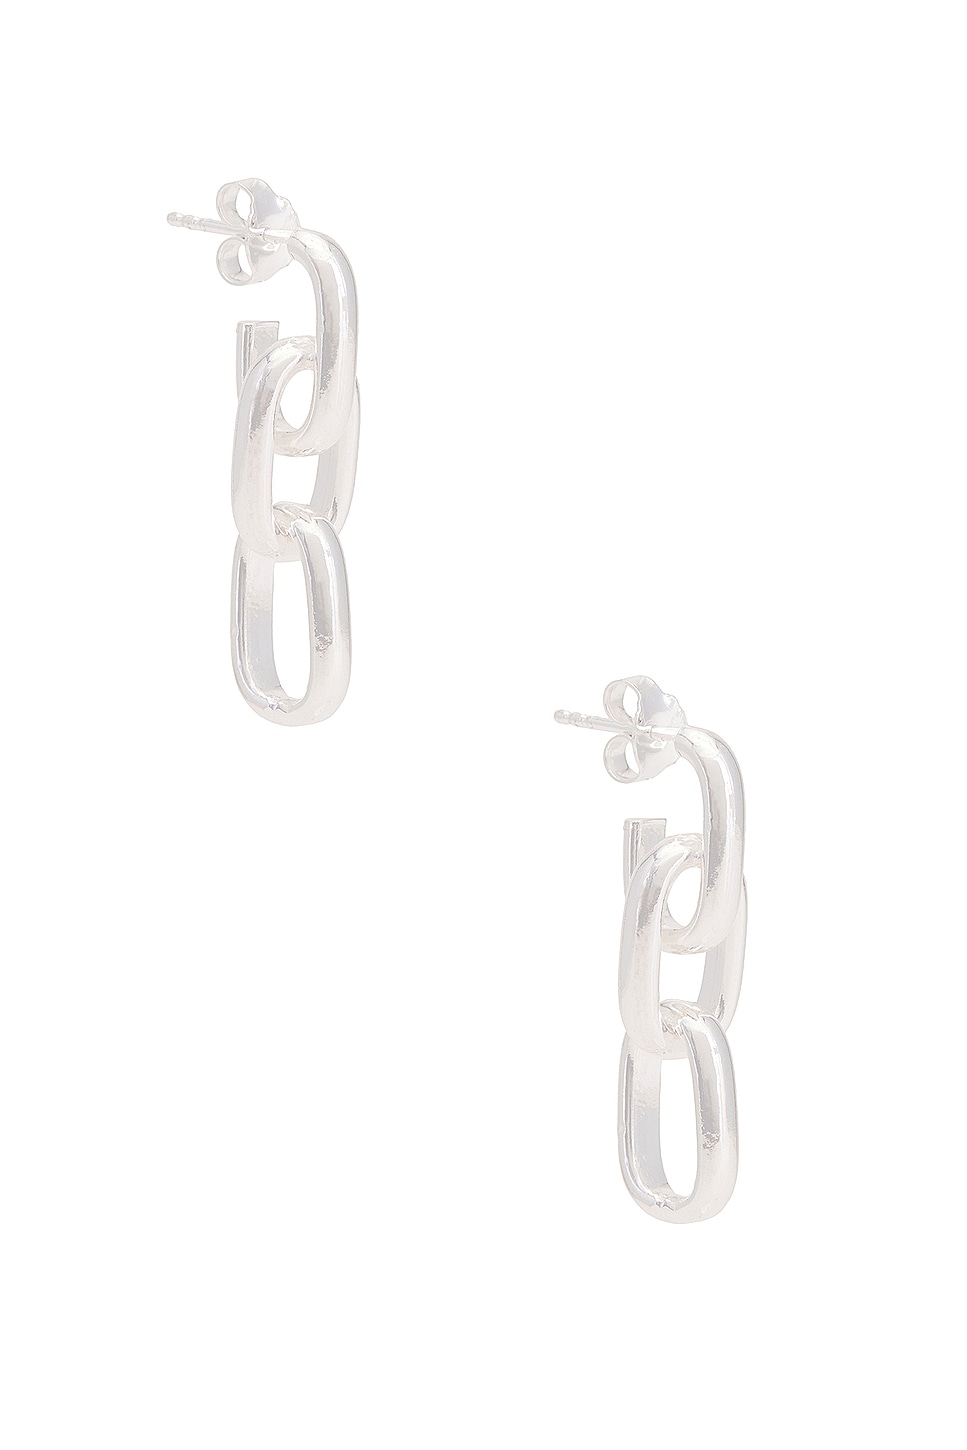 Image 1 of Loren Stewart Forza Earrings in Sterling Silver